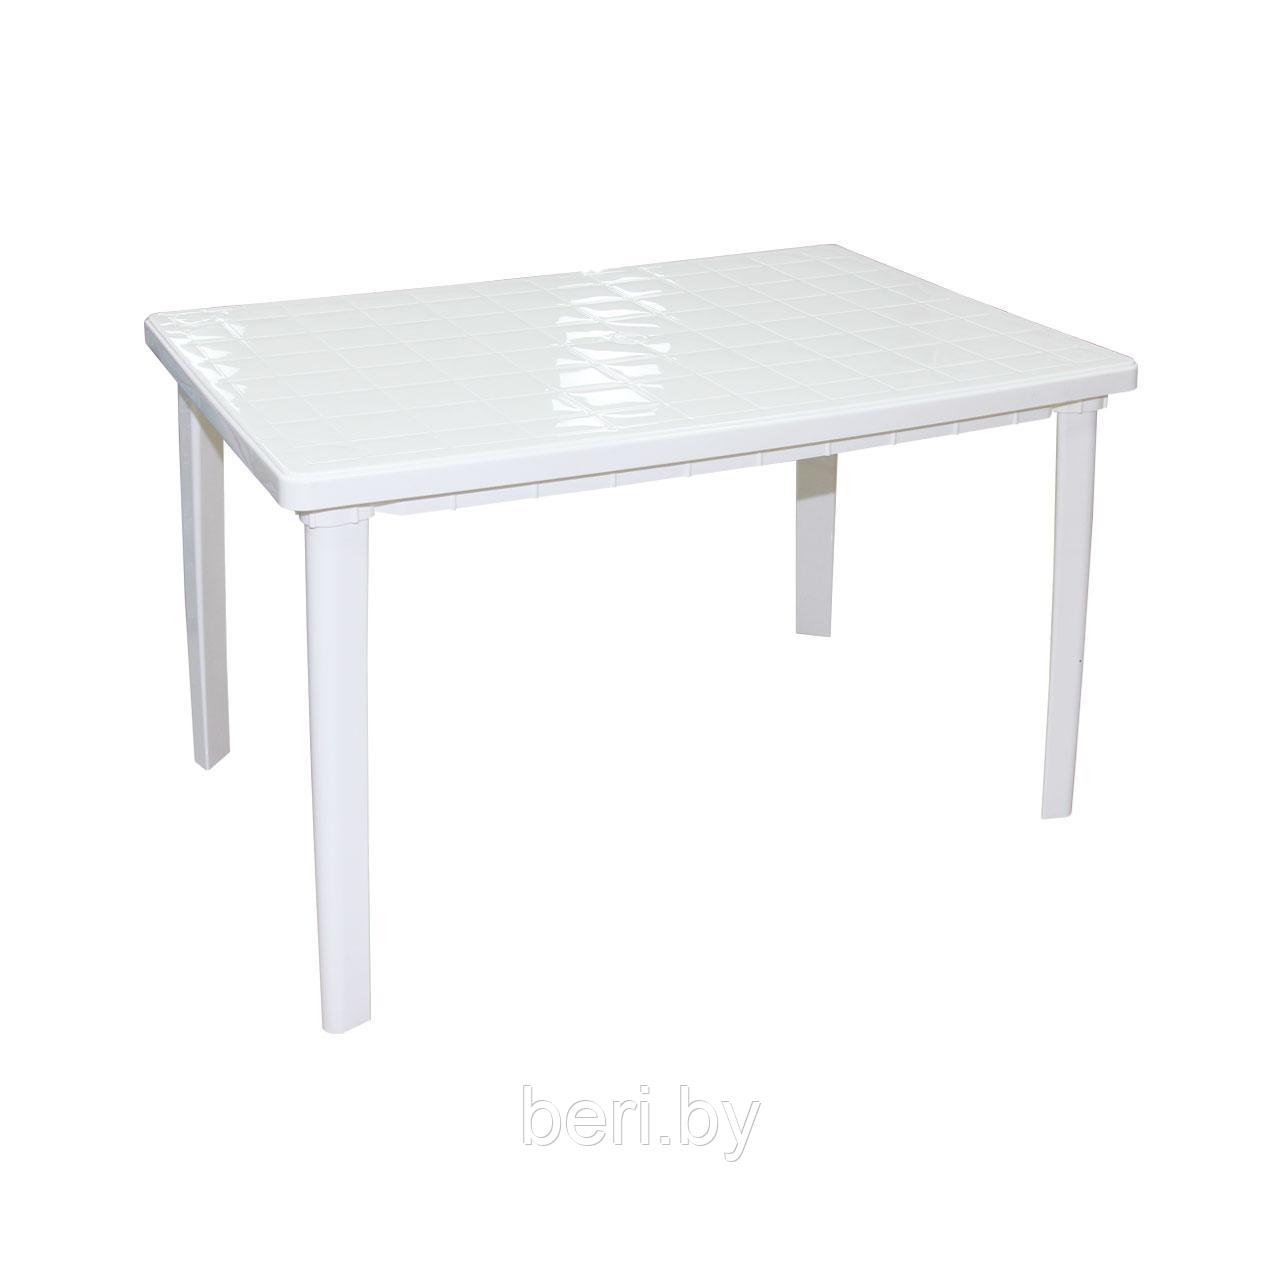 Стол прямоугольный пластиковый, 1200х850х750 см, М2597, белый